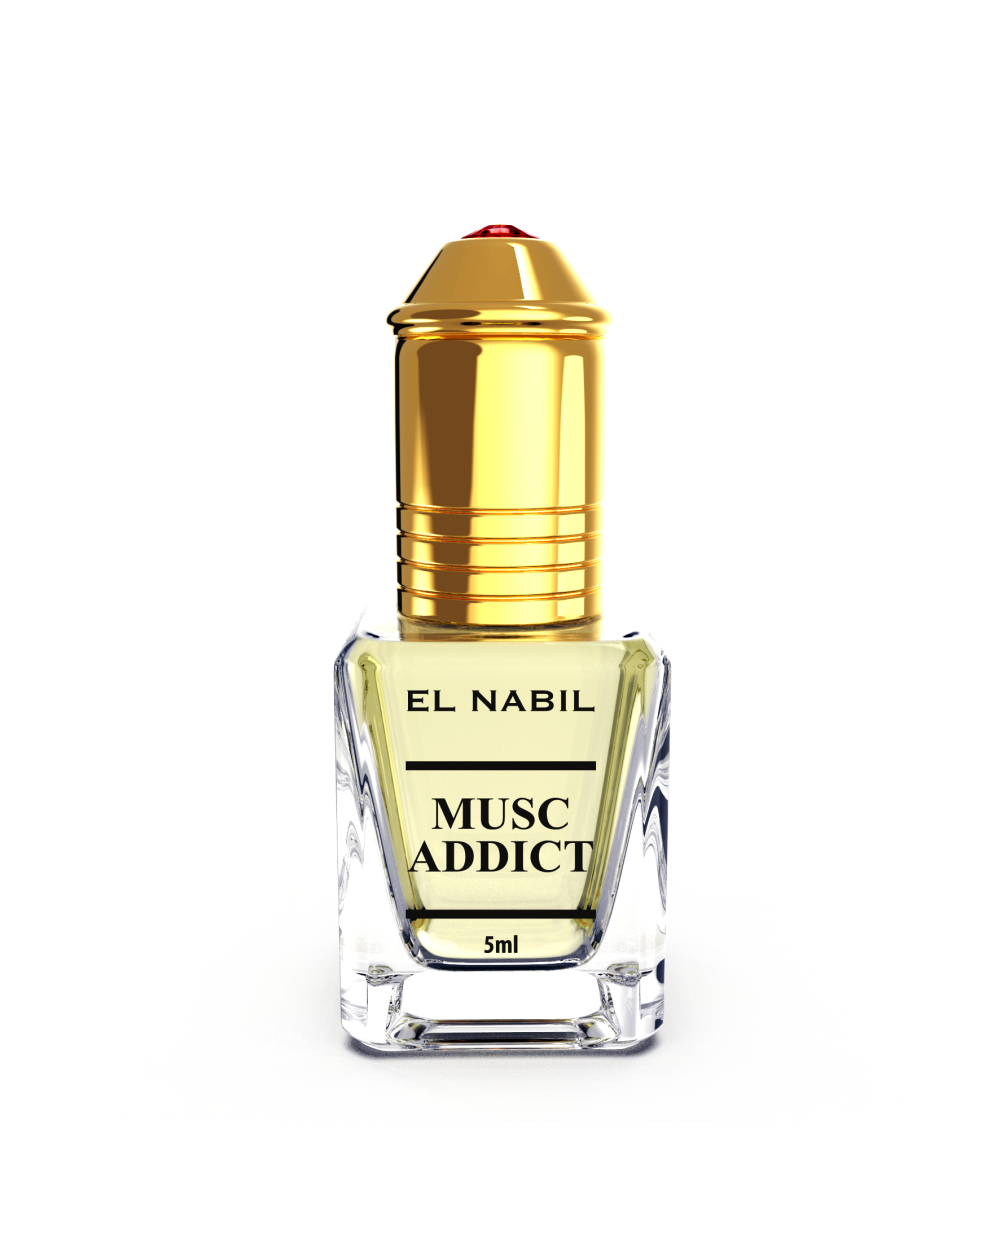 Musc El nabil parfum Addict 5ml